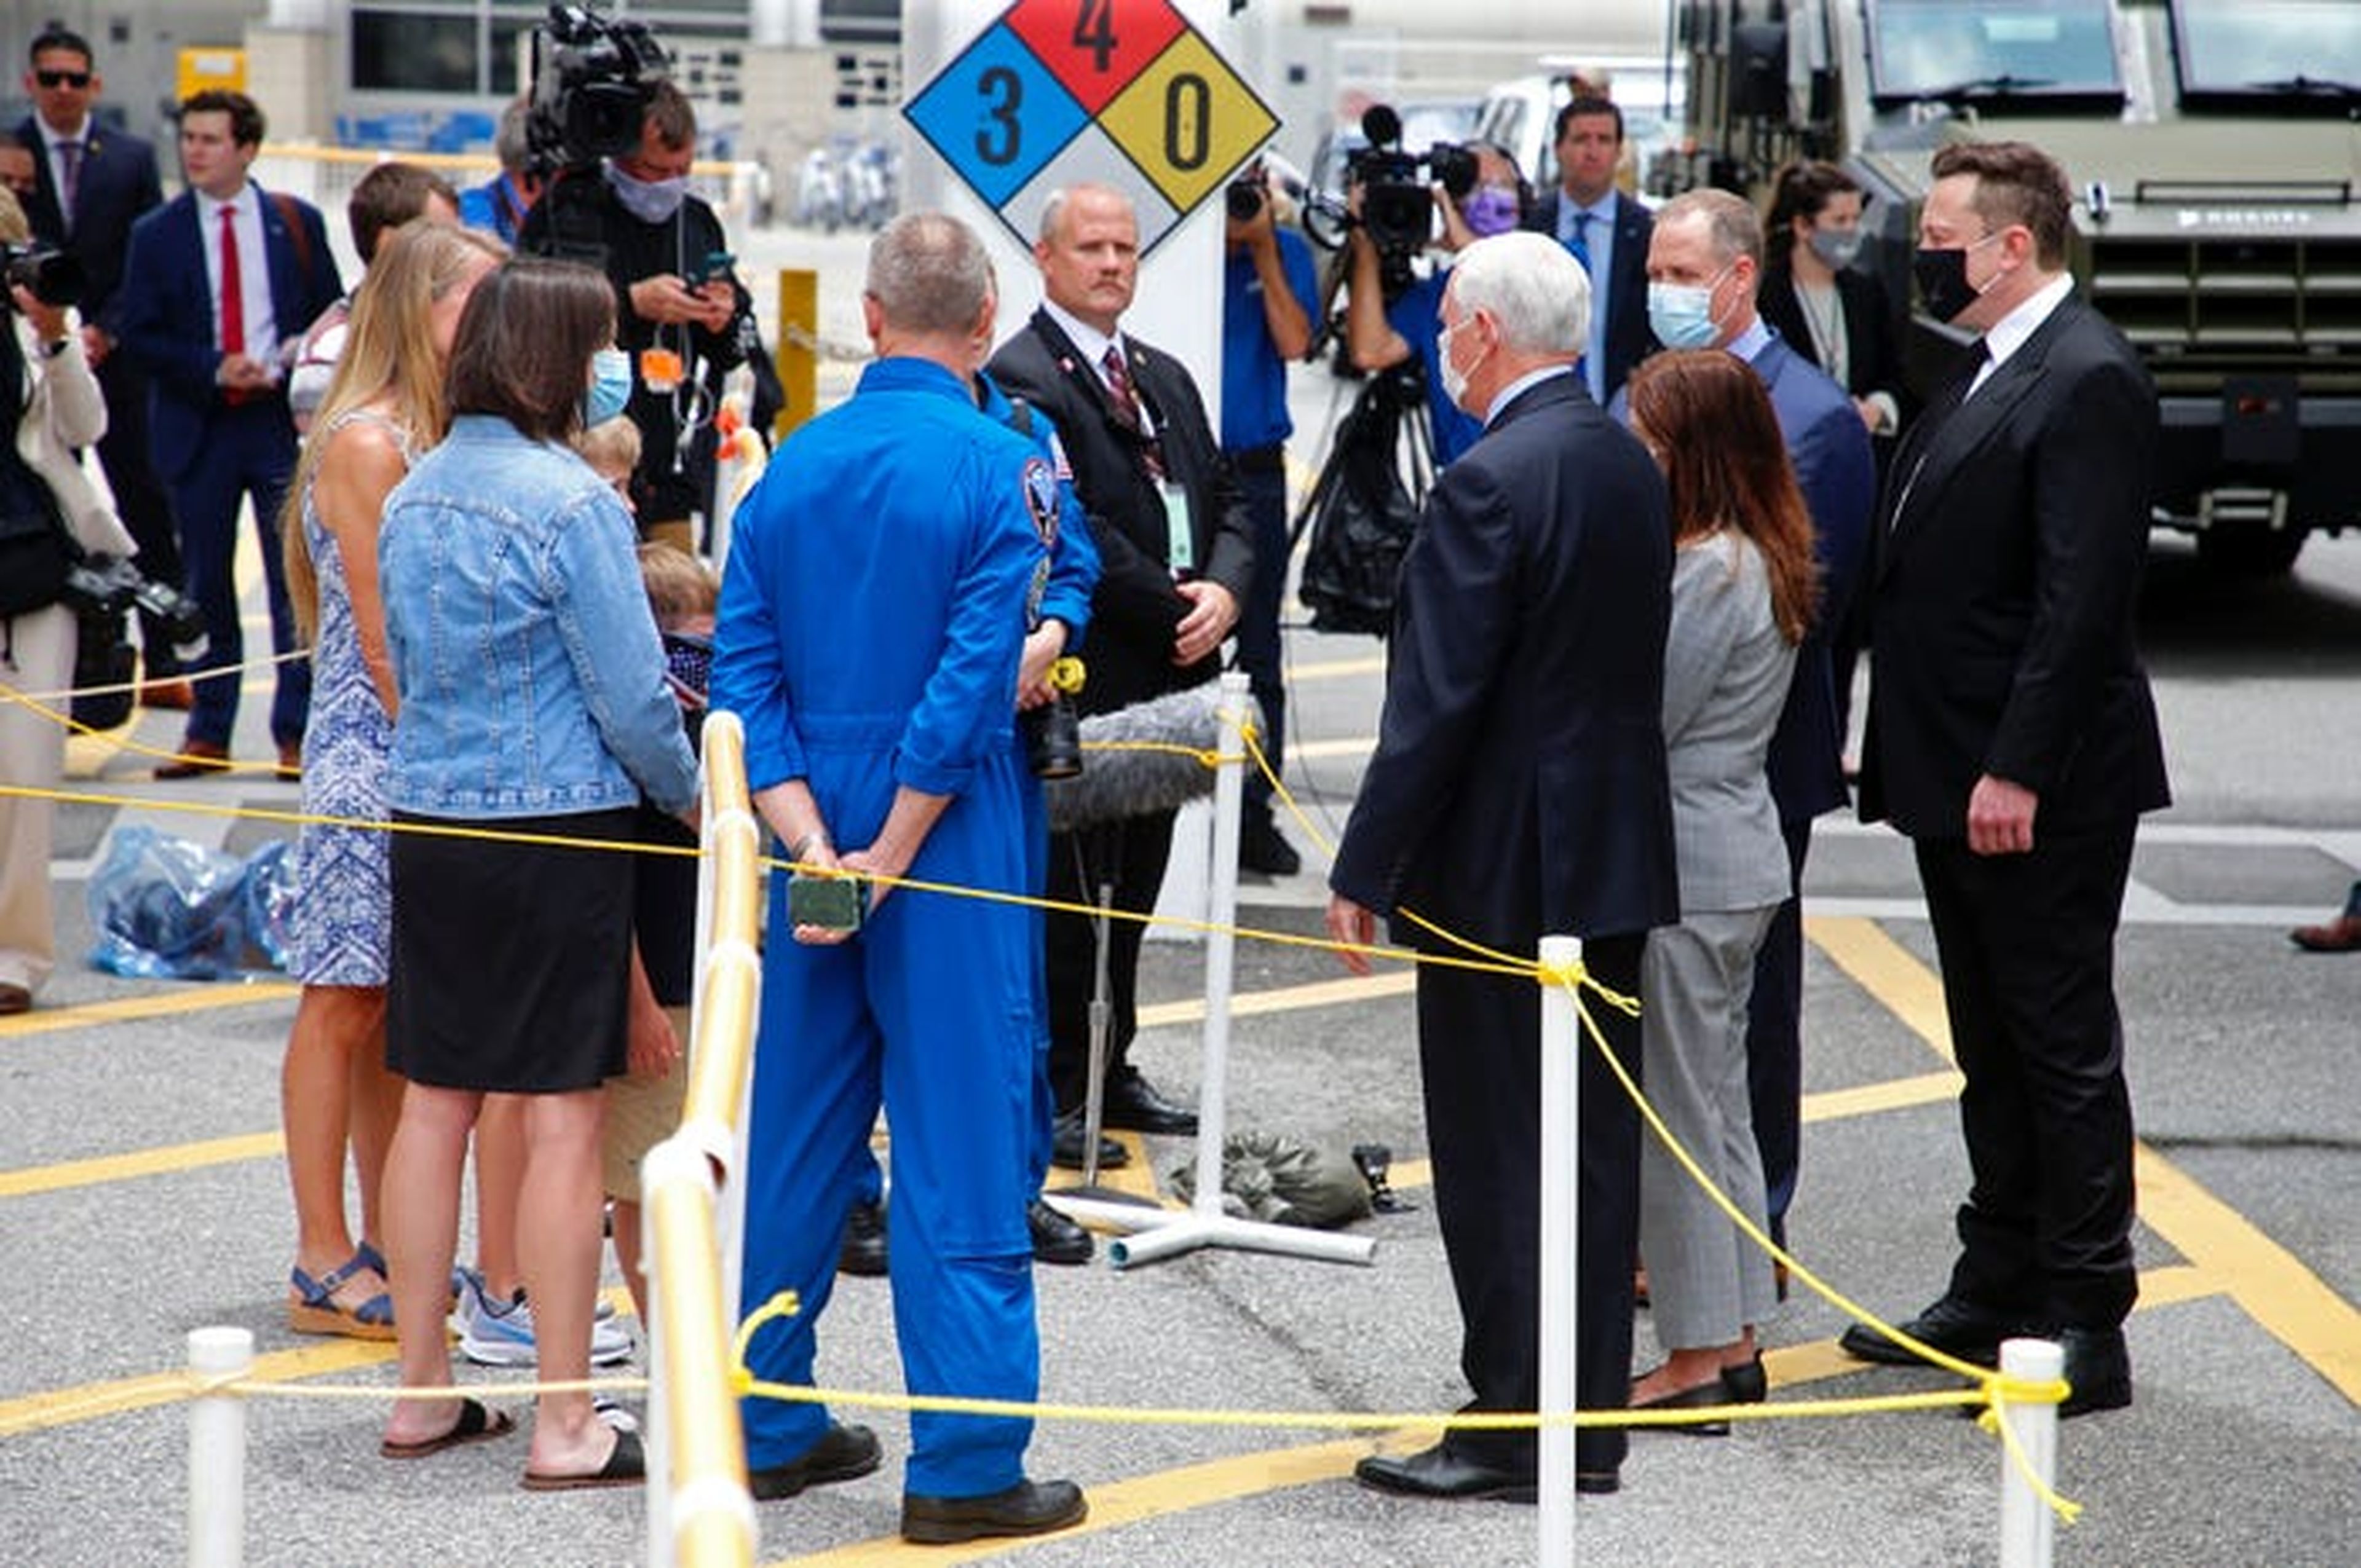 El vicepresidente Mike Pence se unió a Elon Musk, junto con los astronautas y sus familias, en el Centro Espacial Kennedy antes del lanzamiento.